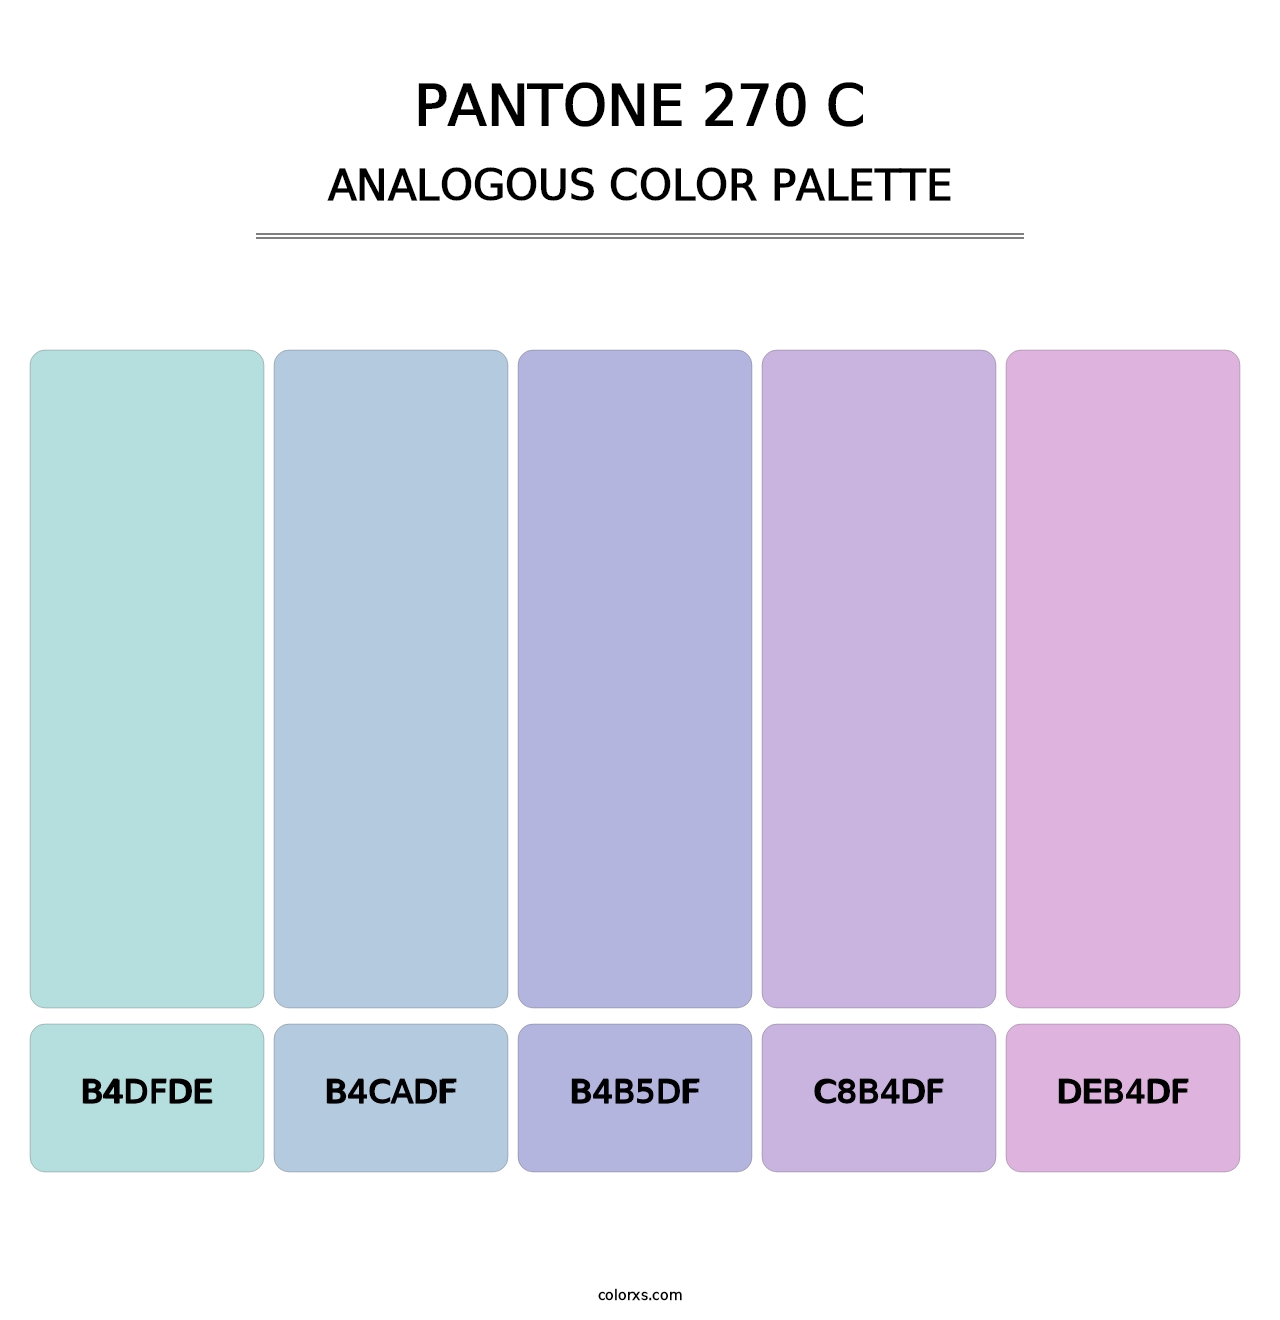 PANTONE 270 C - Analogous Color Palette